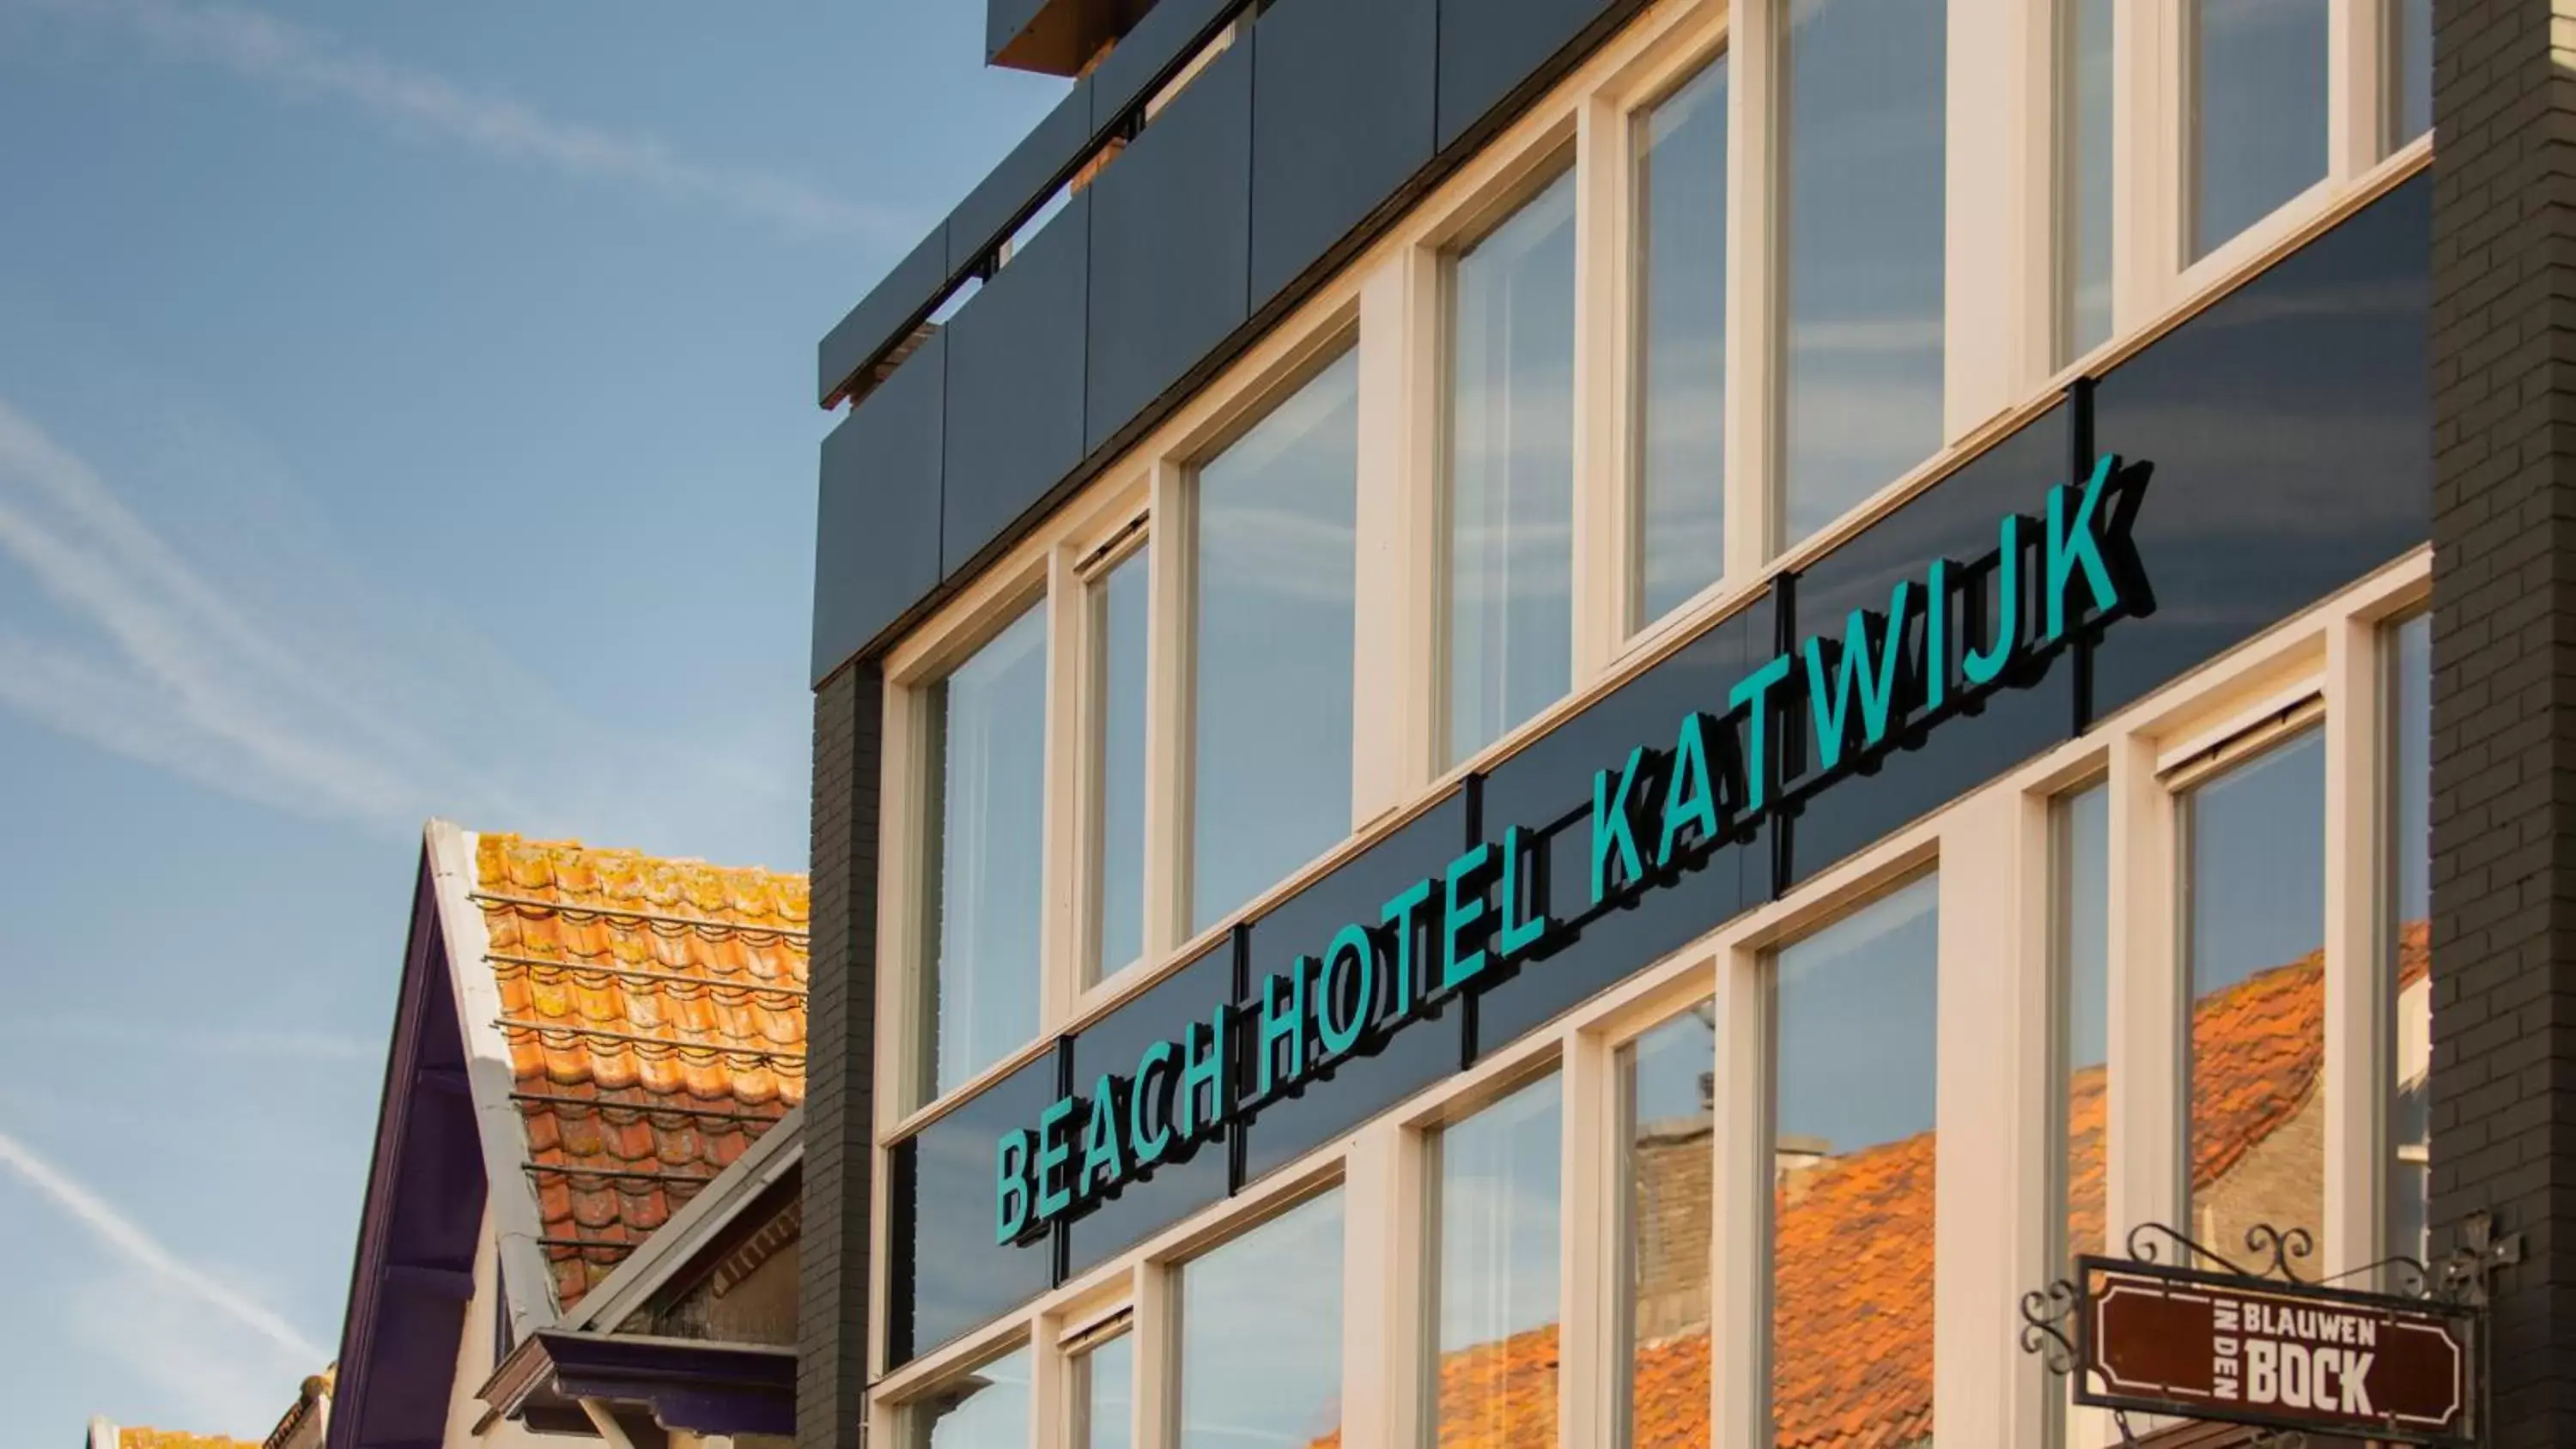 Property Building in Beach Hotel Katwijk